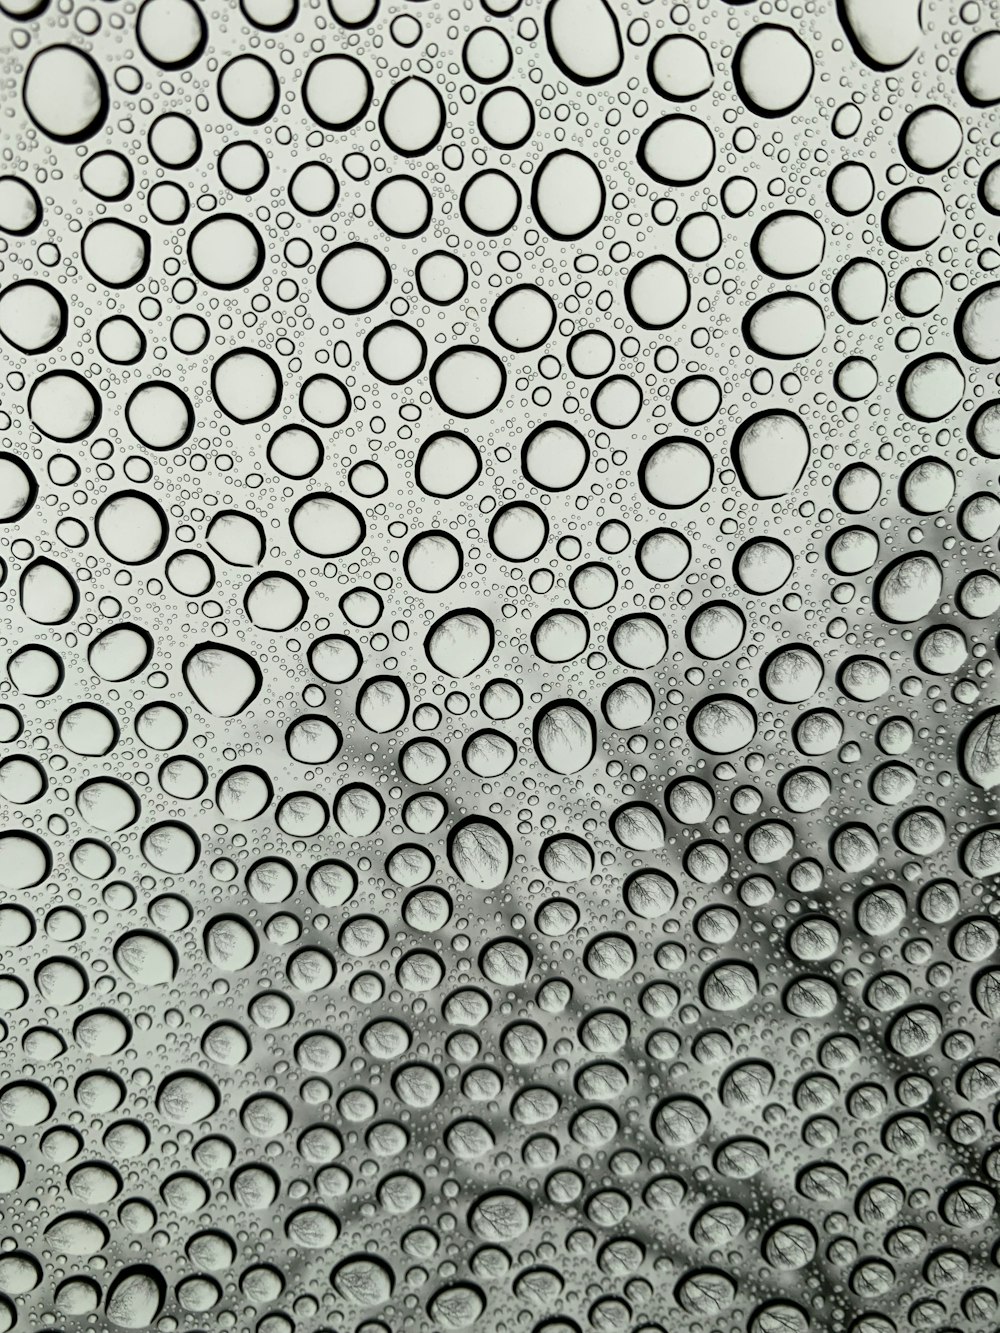 rain splattered glass panel